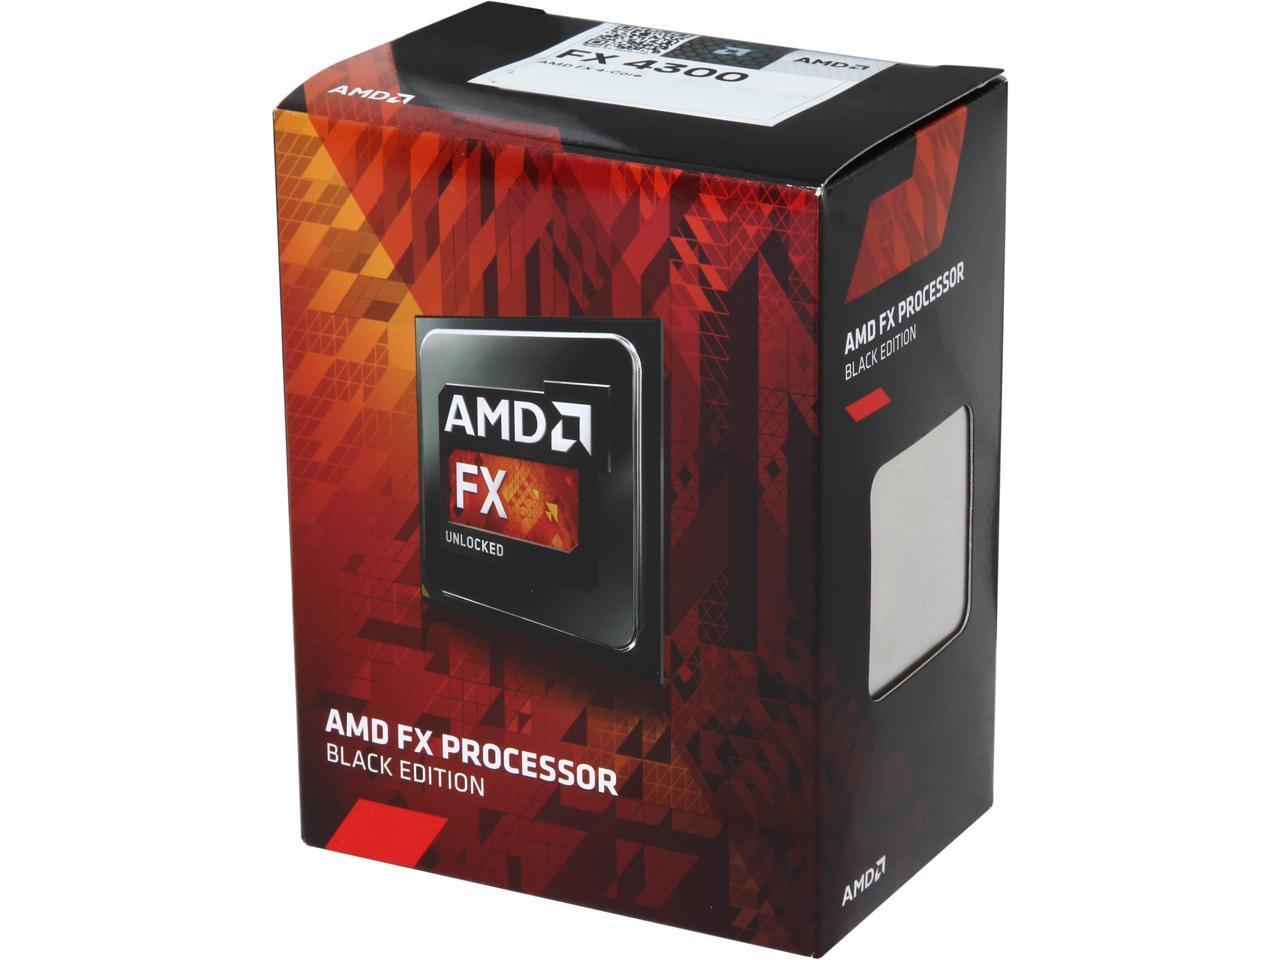 Amd Fd4300wmhkbox Quad-Core Fx-4300 3.8 Ghz 64-Bit Processor Black Edition